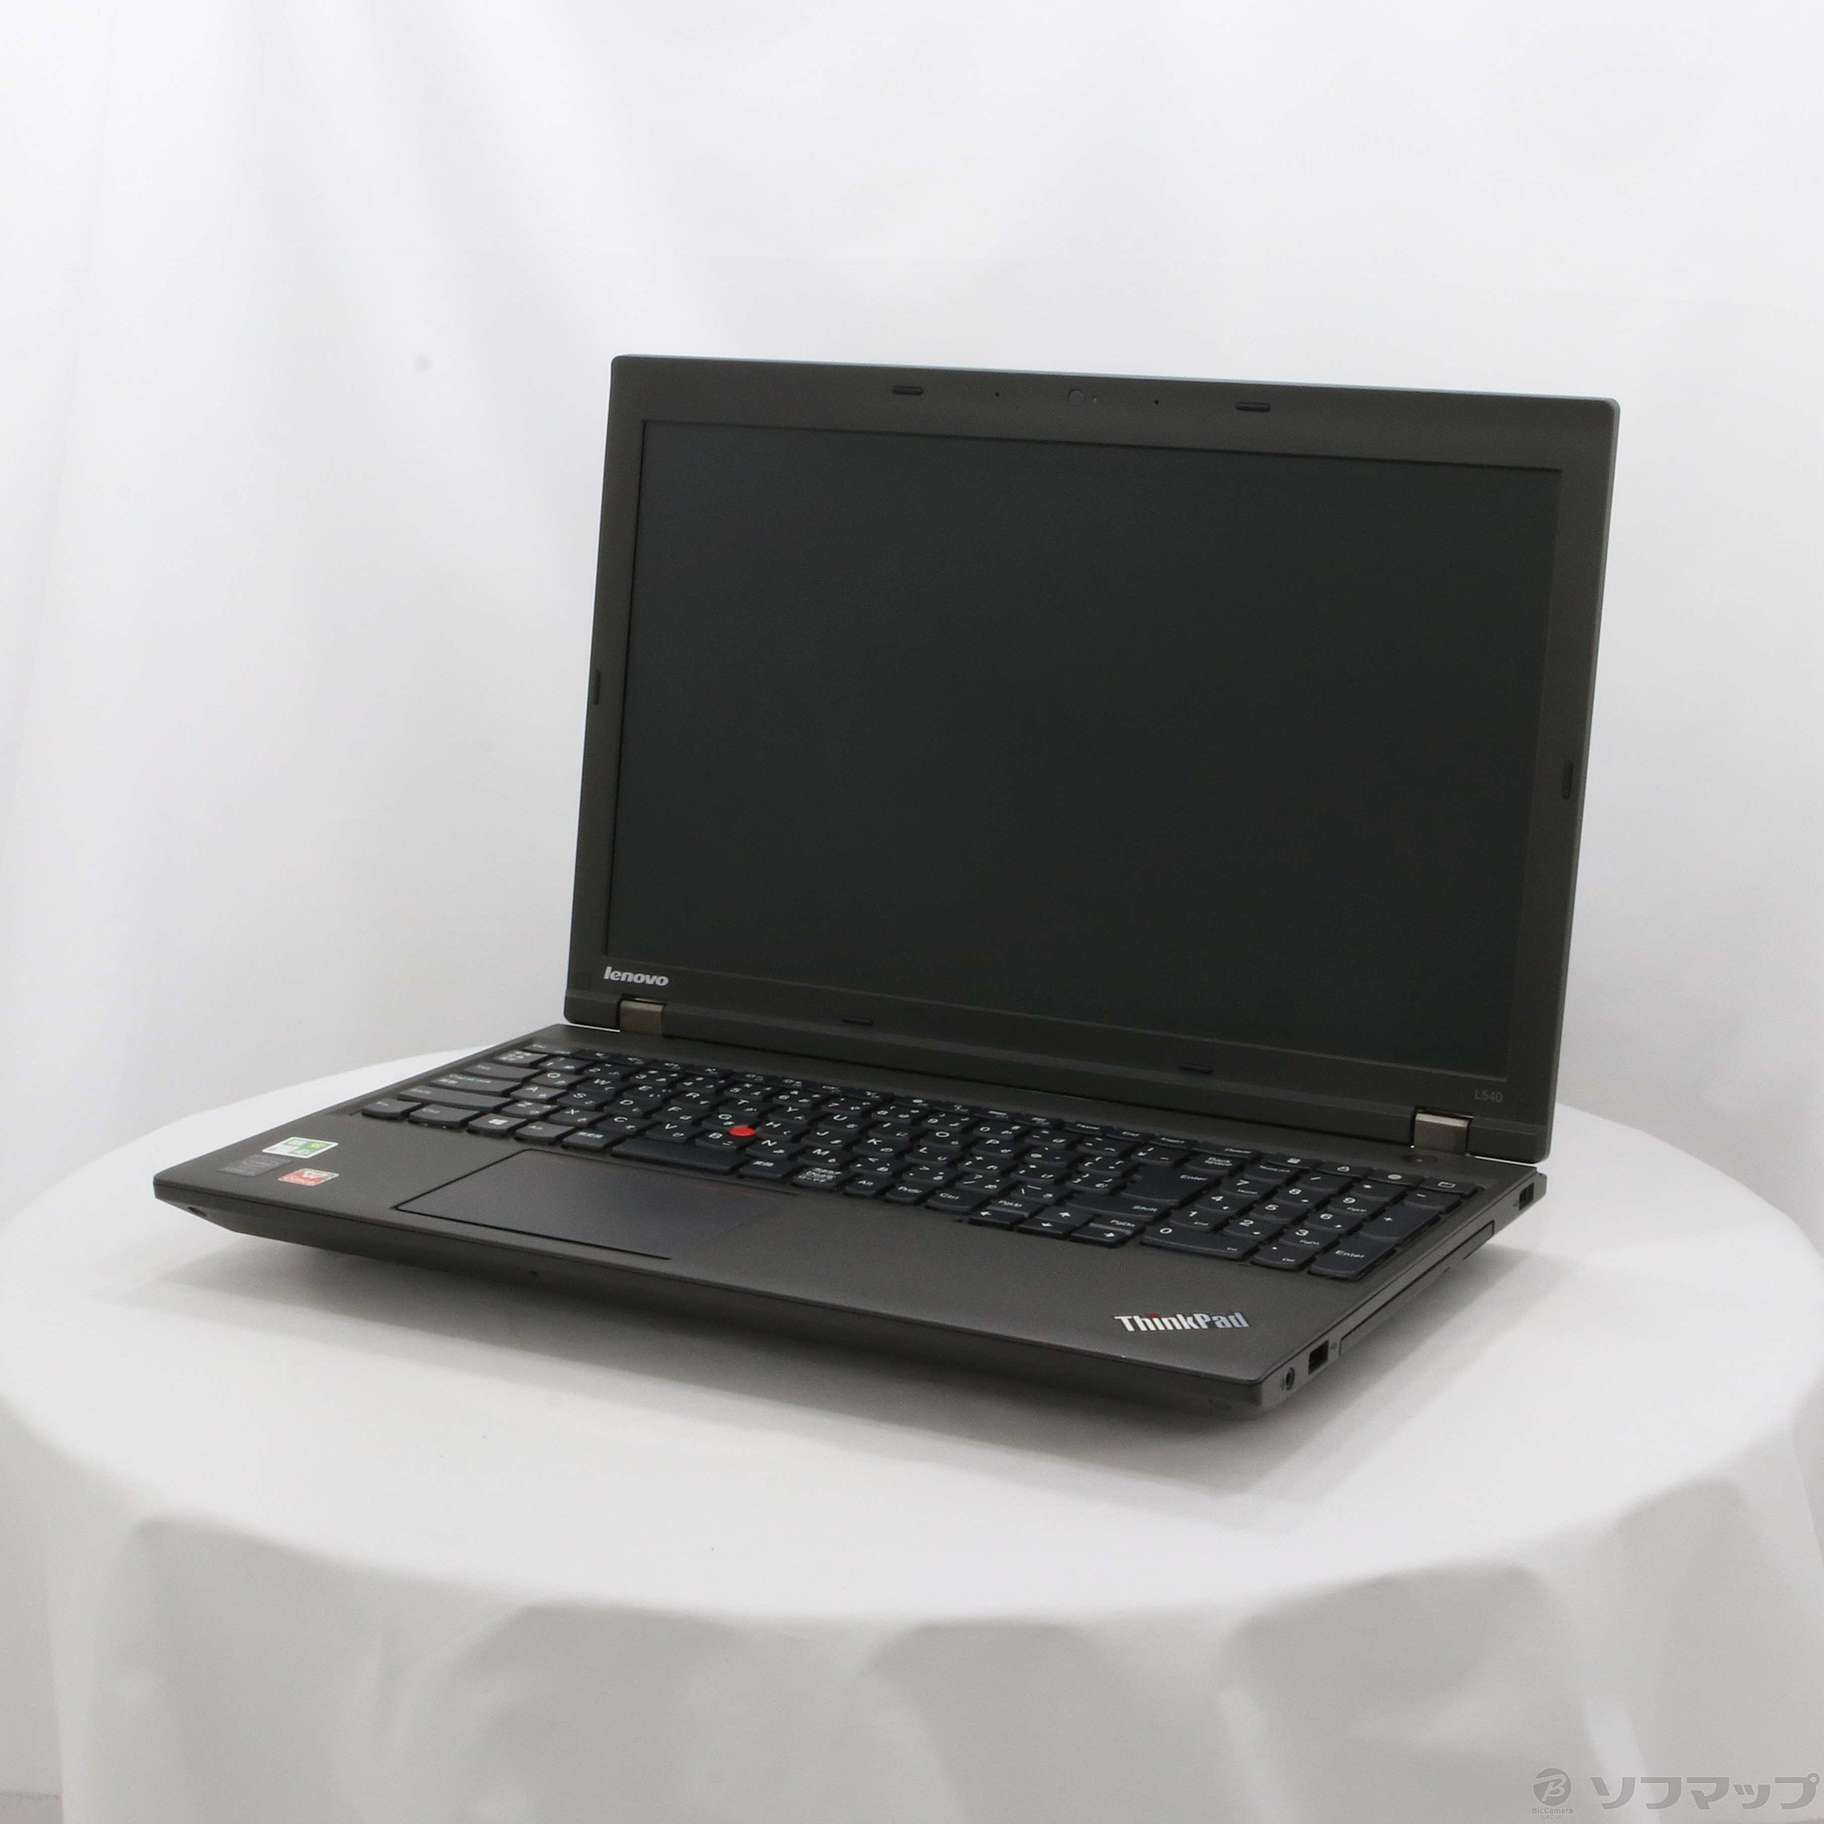 セール対象品 格安安心パソコン ThinkPad L540 20AV007BJP